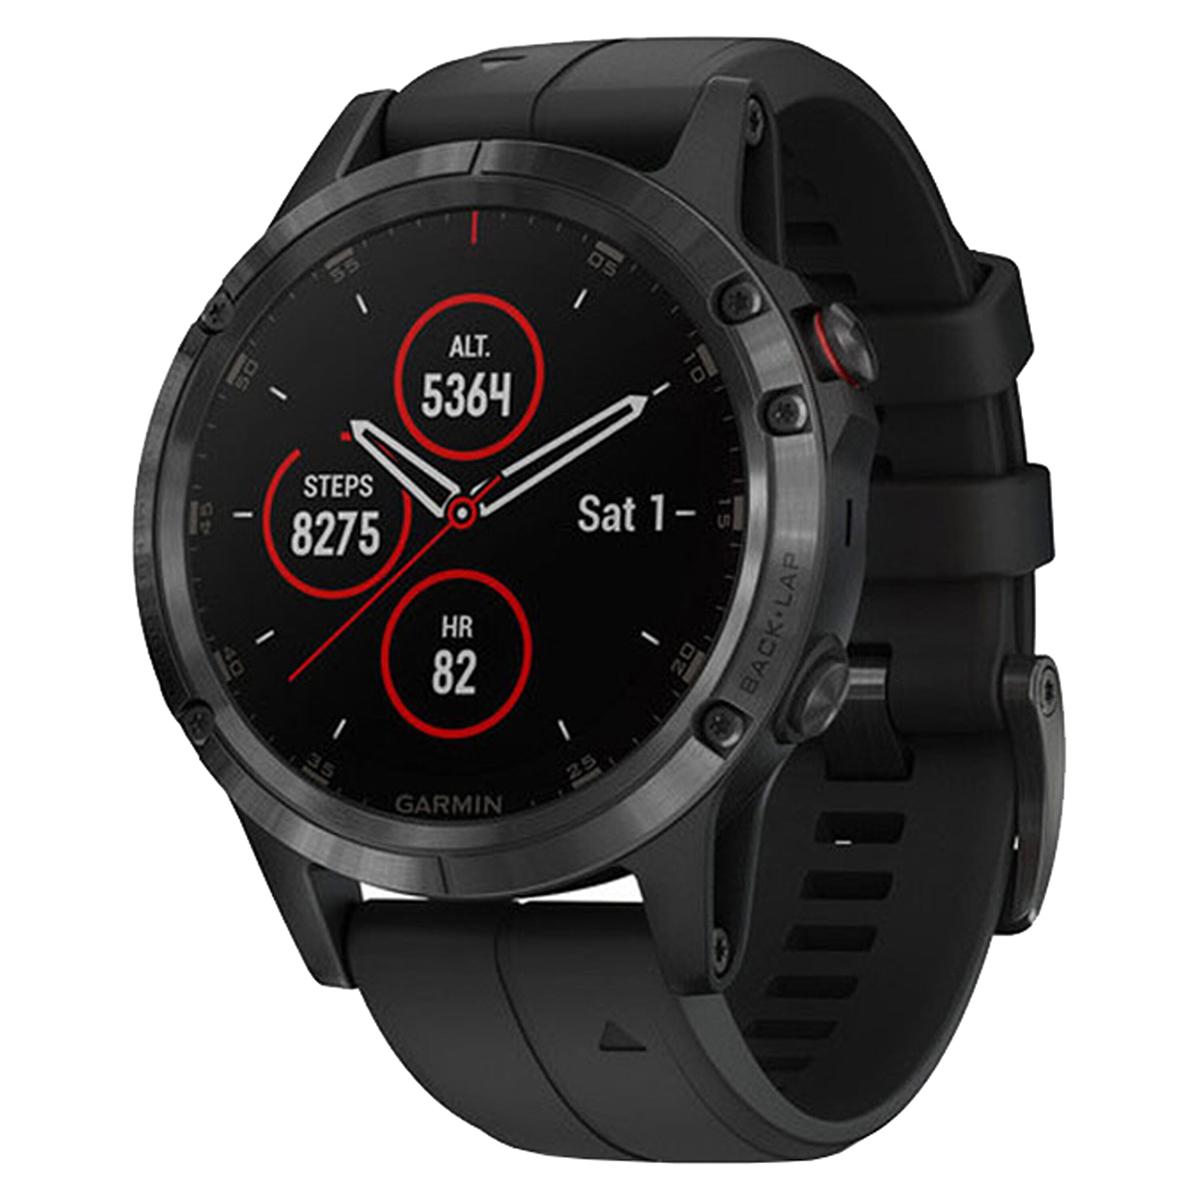 Garmin Fenix 5 Plus Multisport GPS Watch for $249.95 Shipped